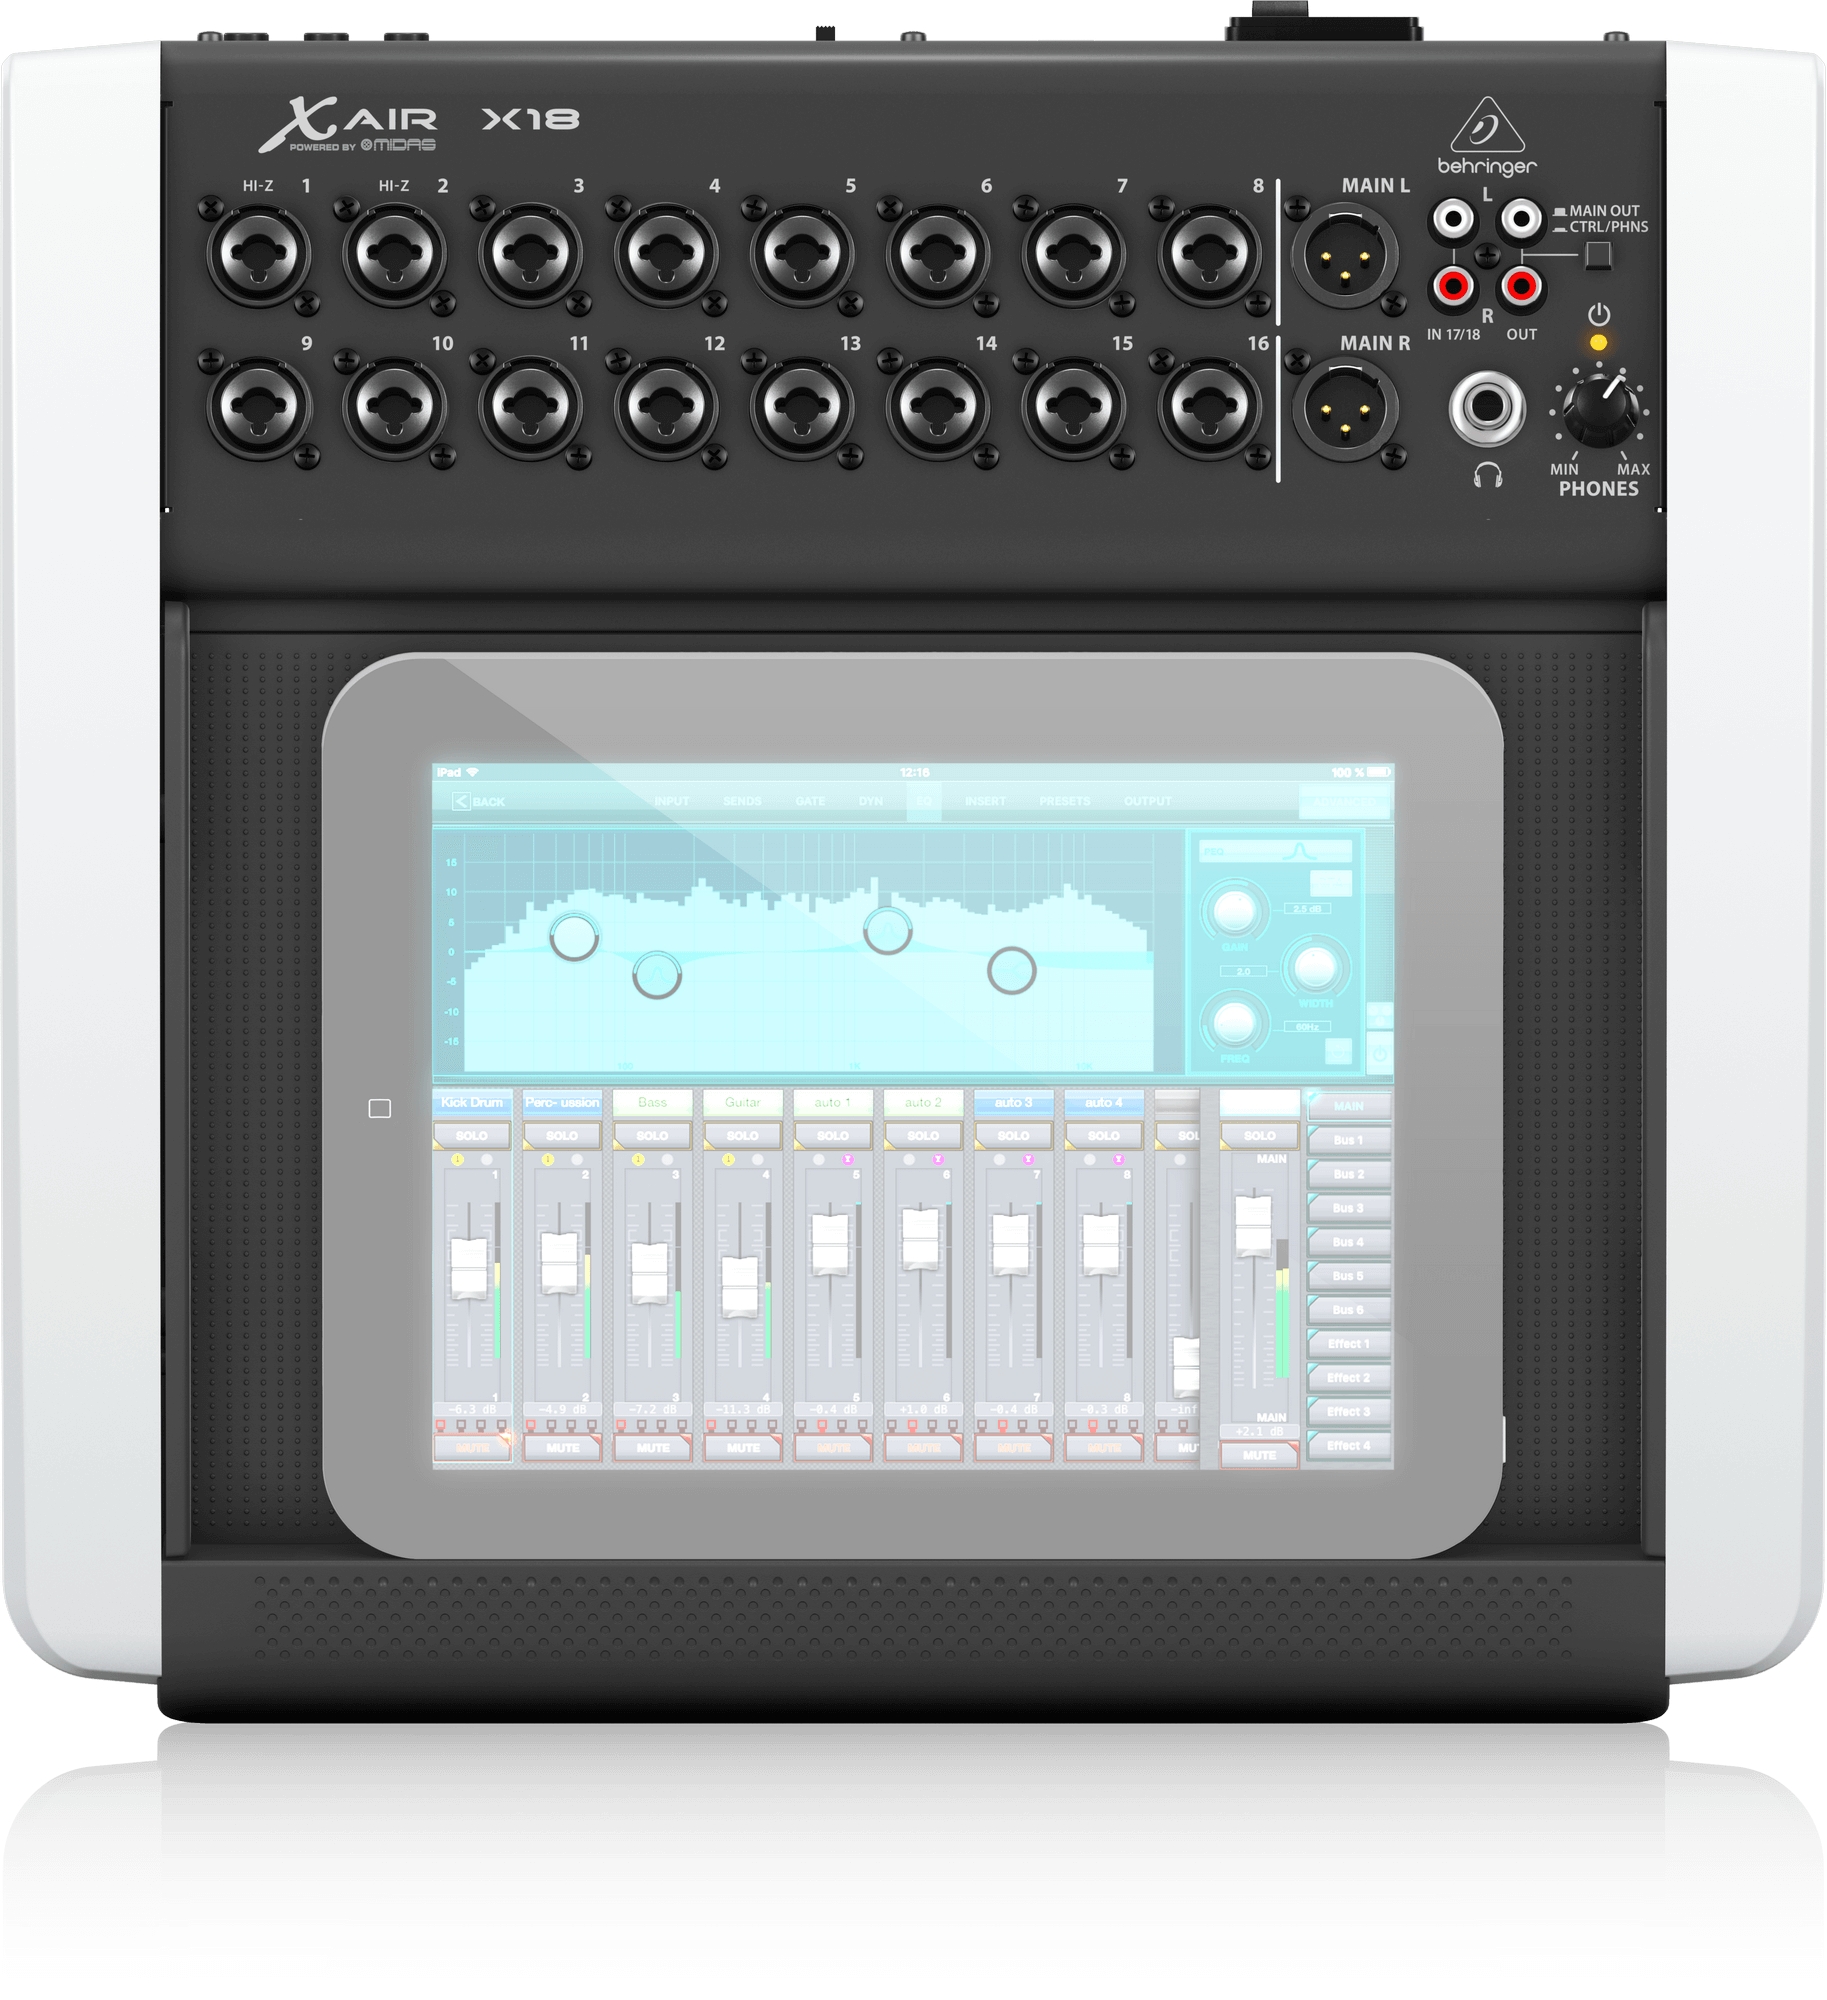 德国百灵达Behringer X18 紧凑型数字调音台价格优惠